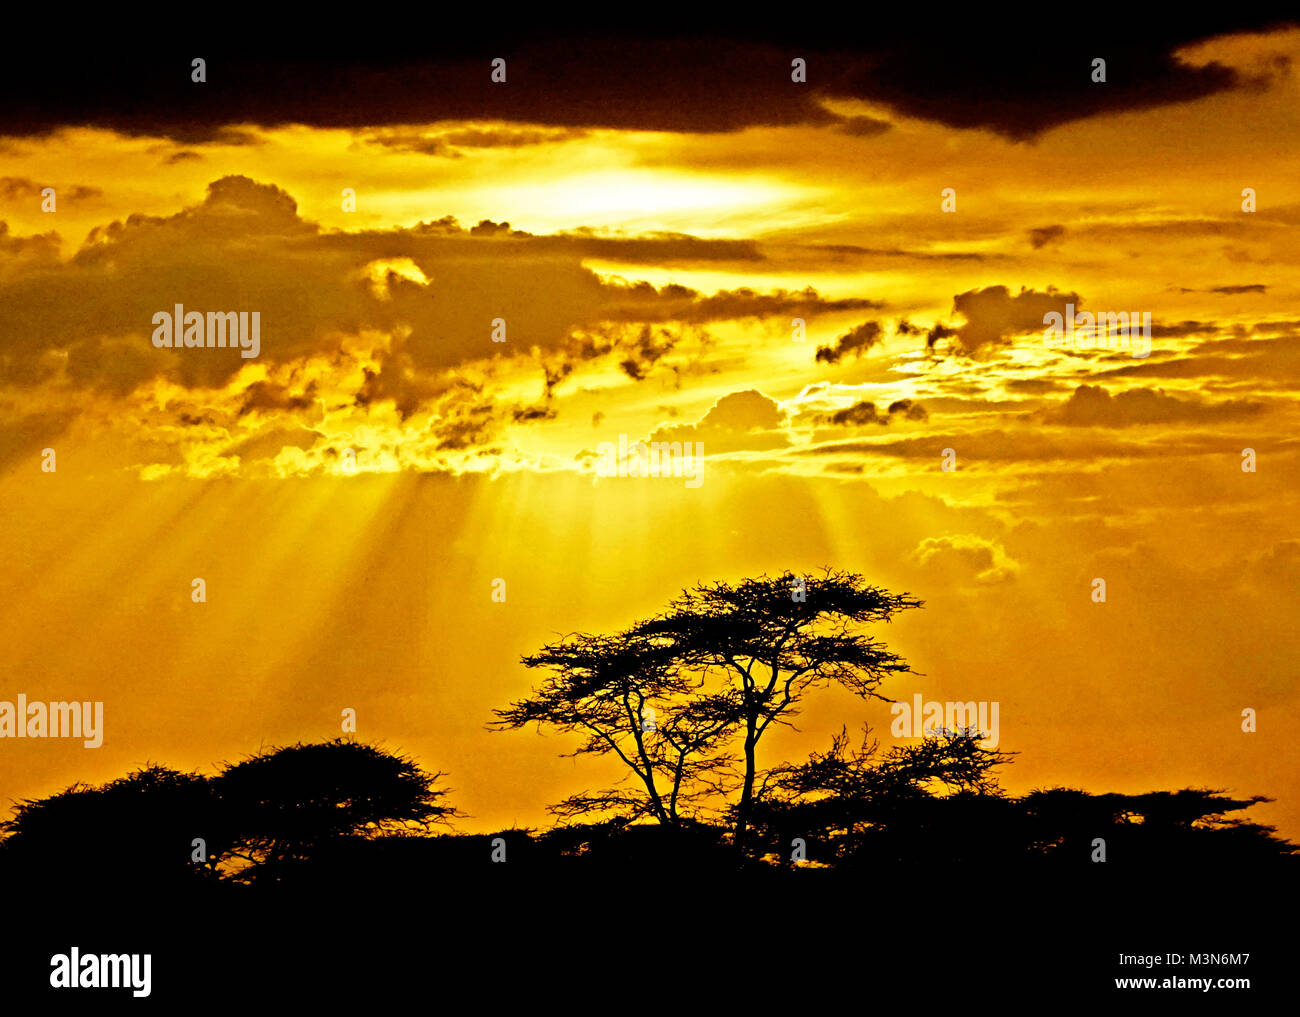 Stagliano alberi di acacia evidenziata da raggi di luce attraverso nuvole temporalesche sulle pianure del Serengeti in Tanzania. Foto Stock